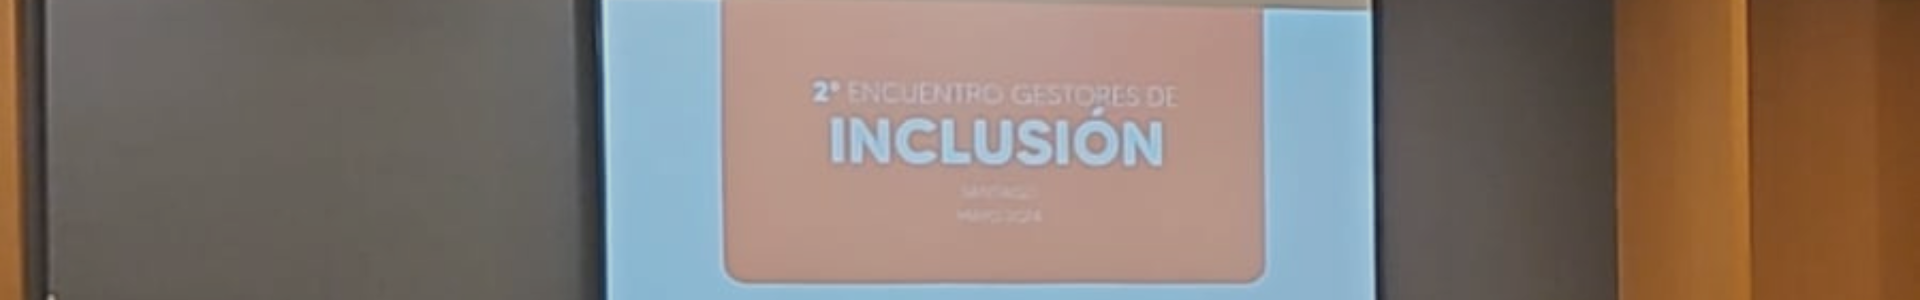 Gestoras de Inclusión de Dictuc participan en evento de Teletón